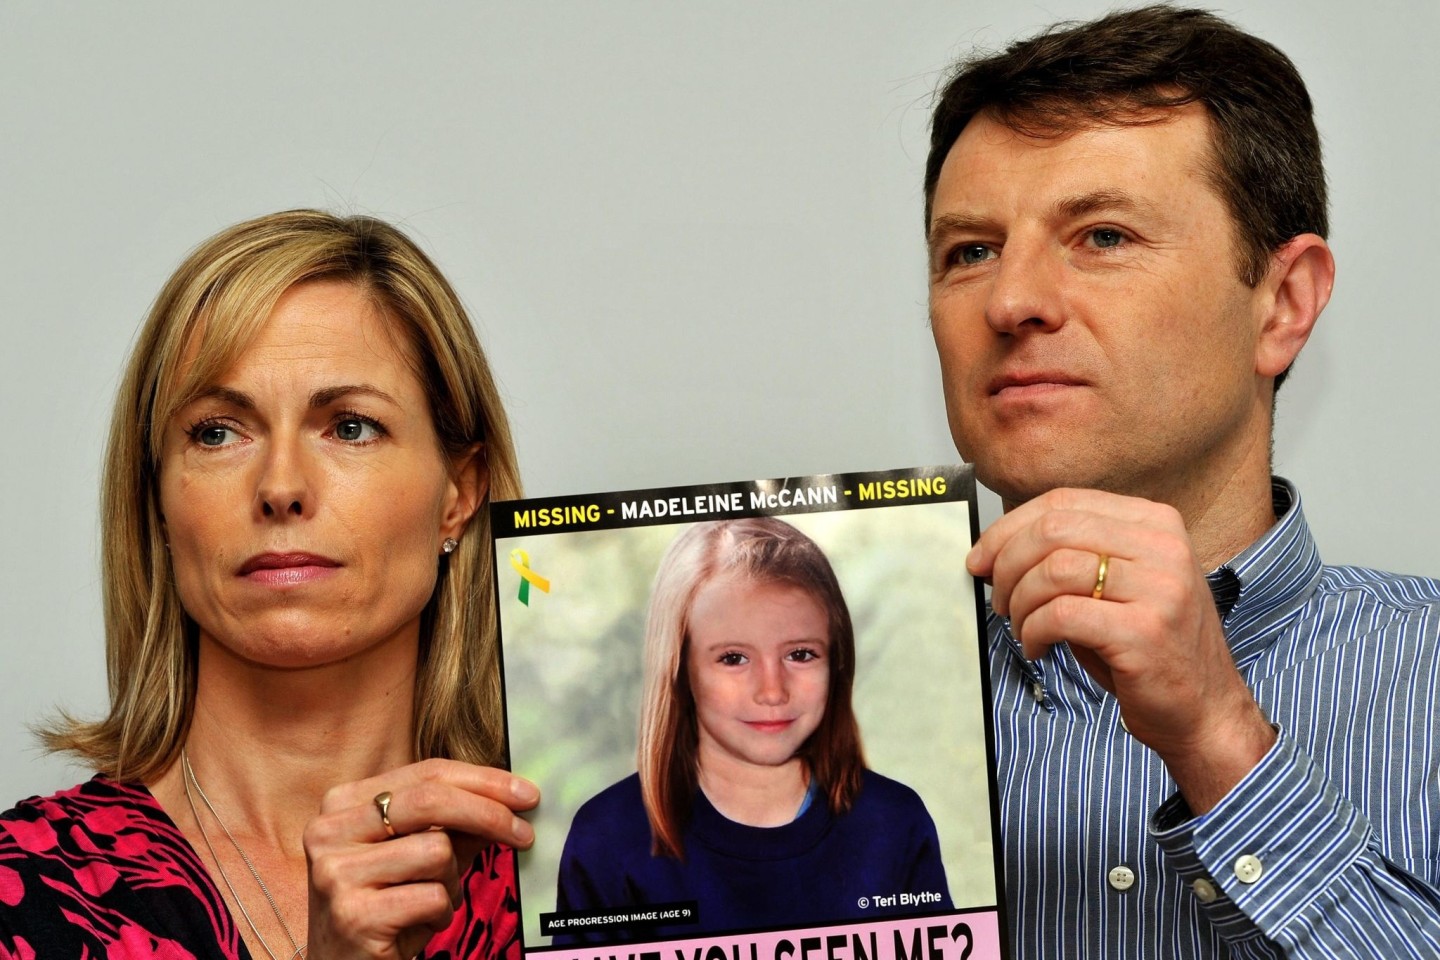 Kate und Gerry McCann, Eltern der verschwundenen Maddie, bei einem Such-Aufruf im Jahr 2012.